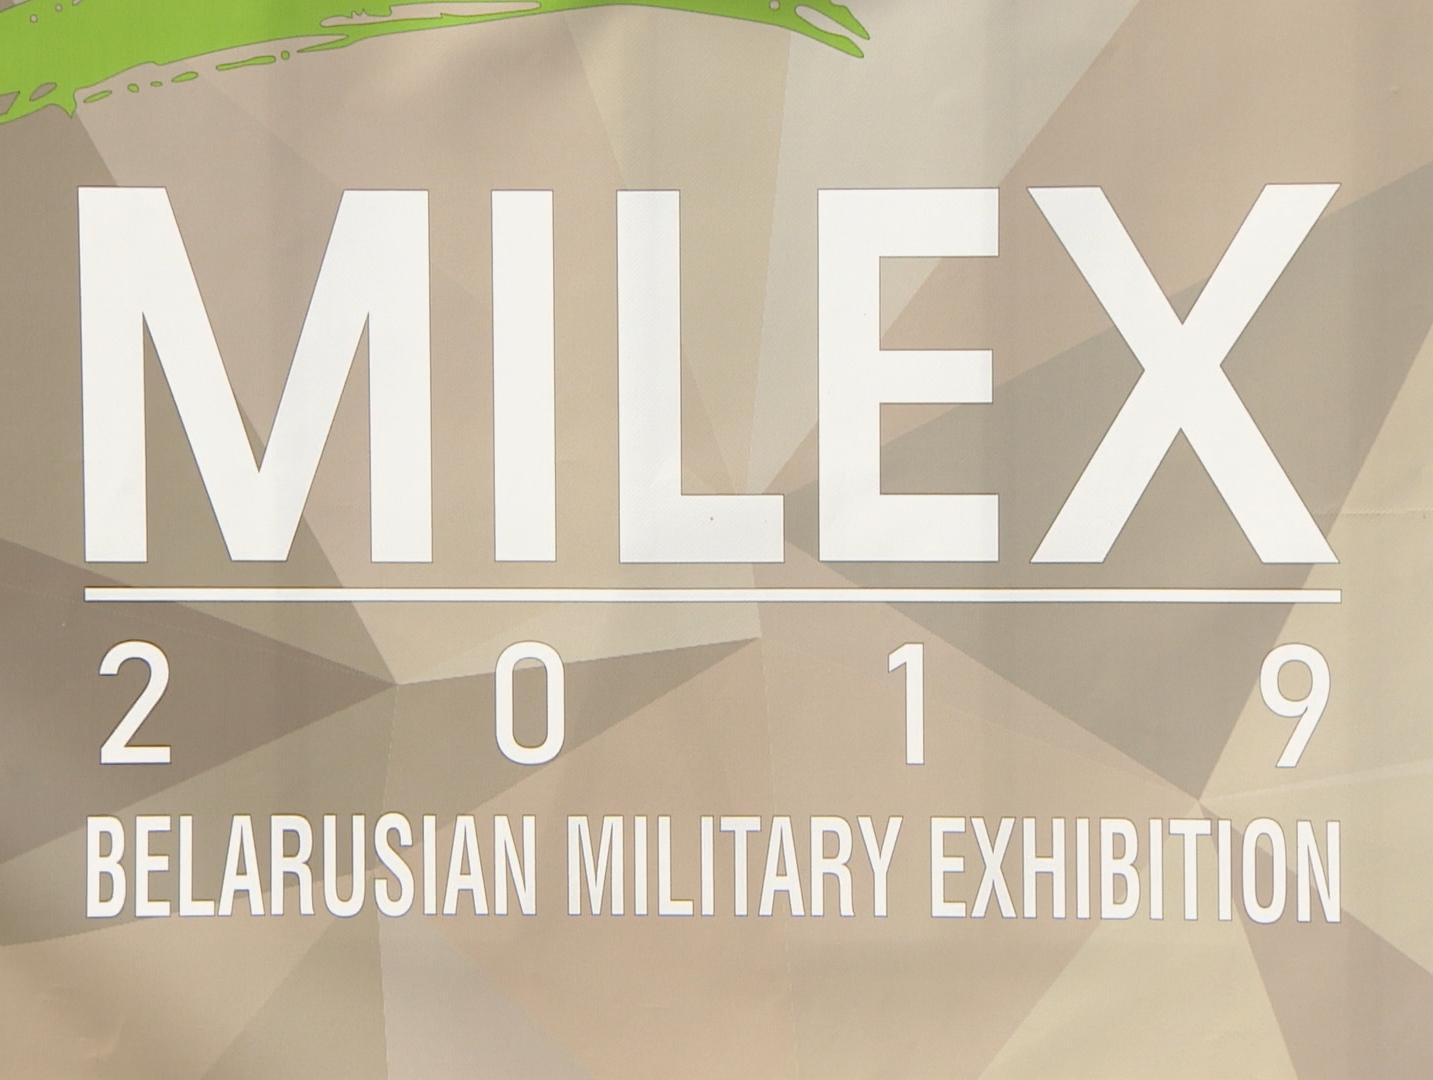 Выставка военной техники и вооружения MILEX открылась в Минске